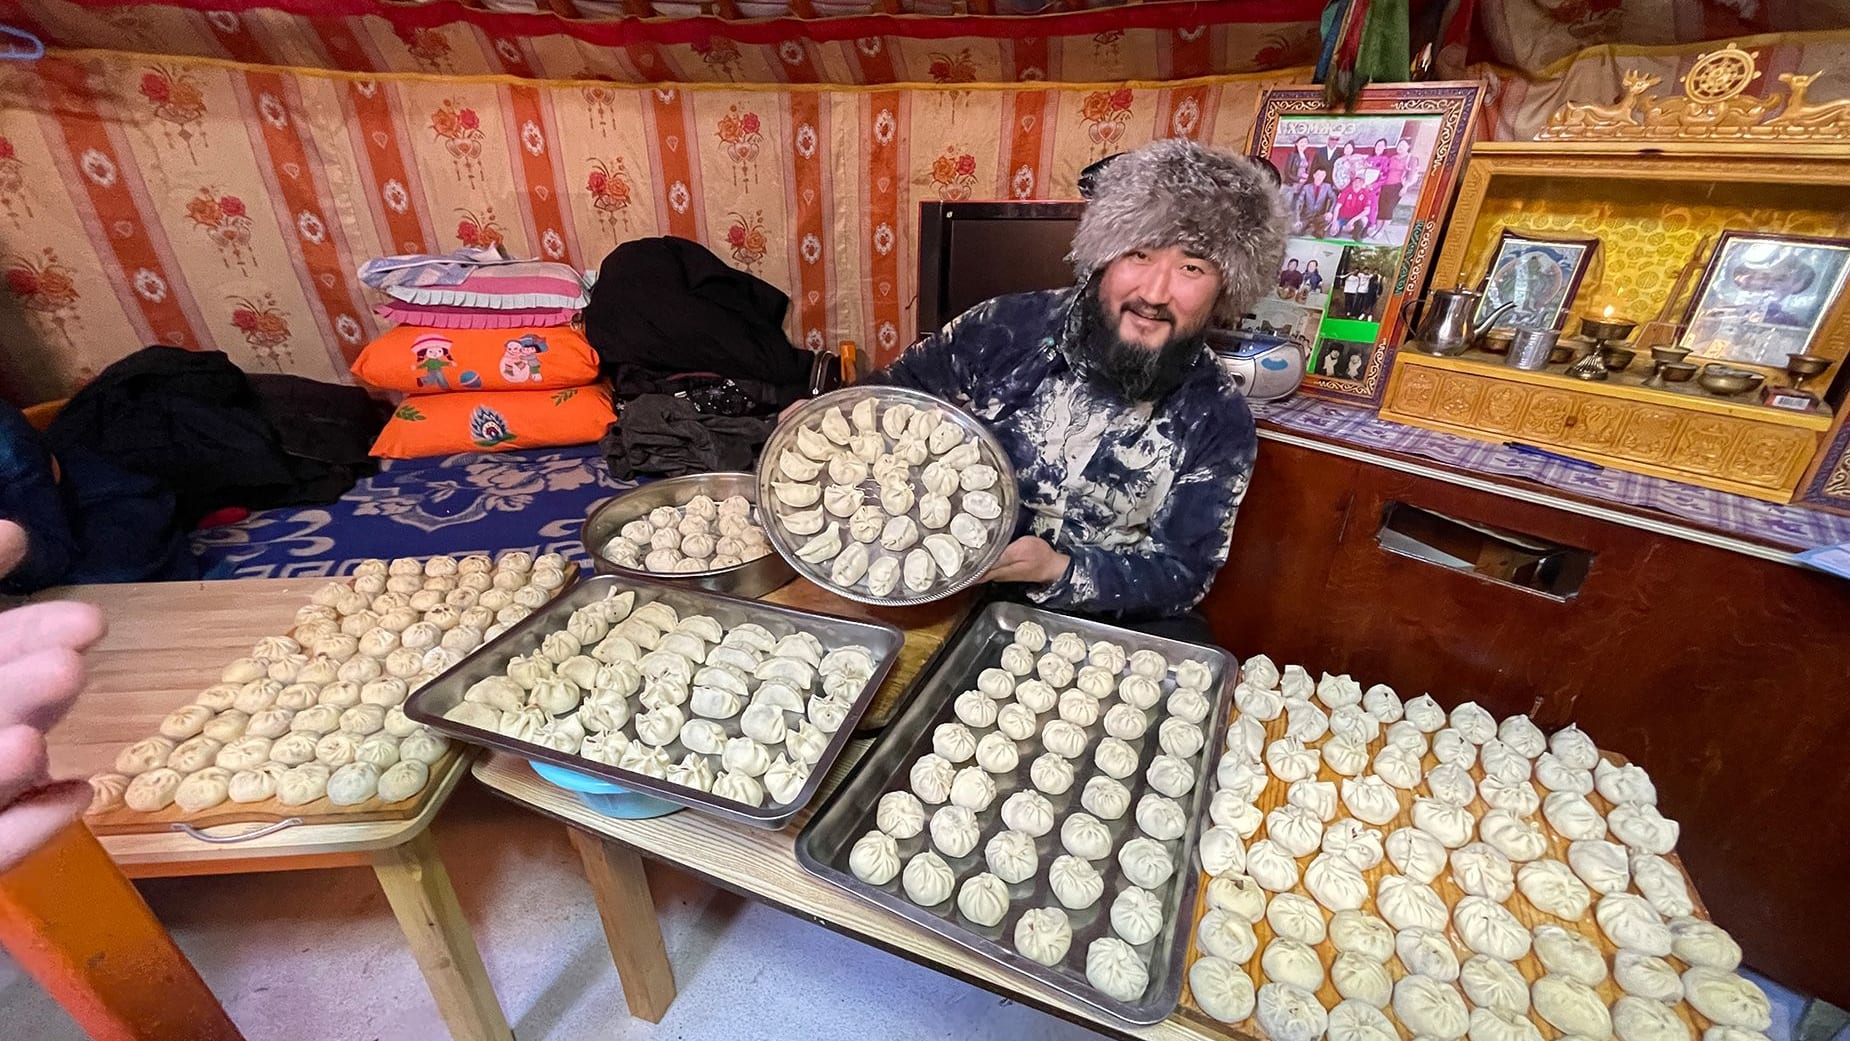 ثقافة حياة البدو ما زالت منتشرة في منغوليا.. ووزيرة الثقافة تشرح لـCNN أهمية ذلك